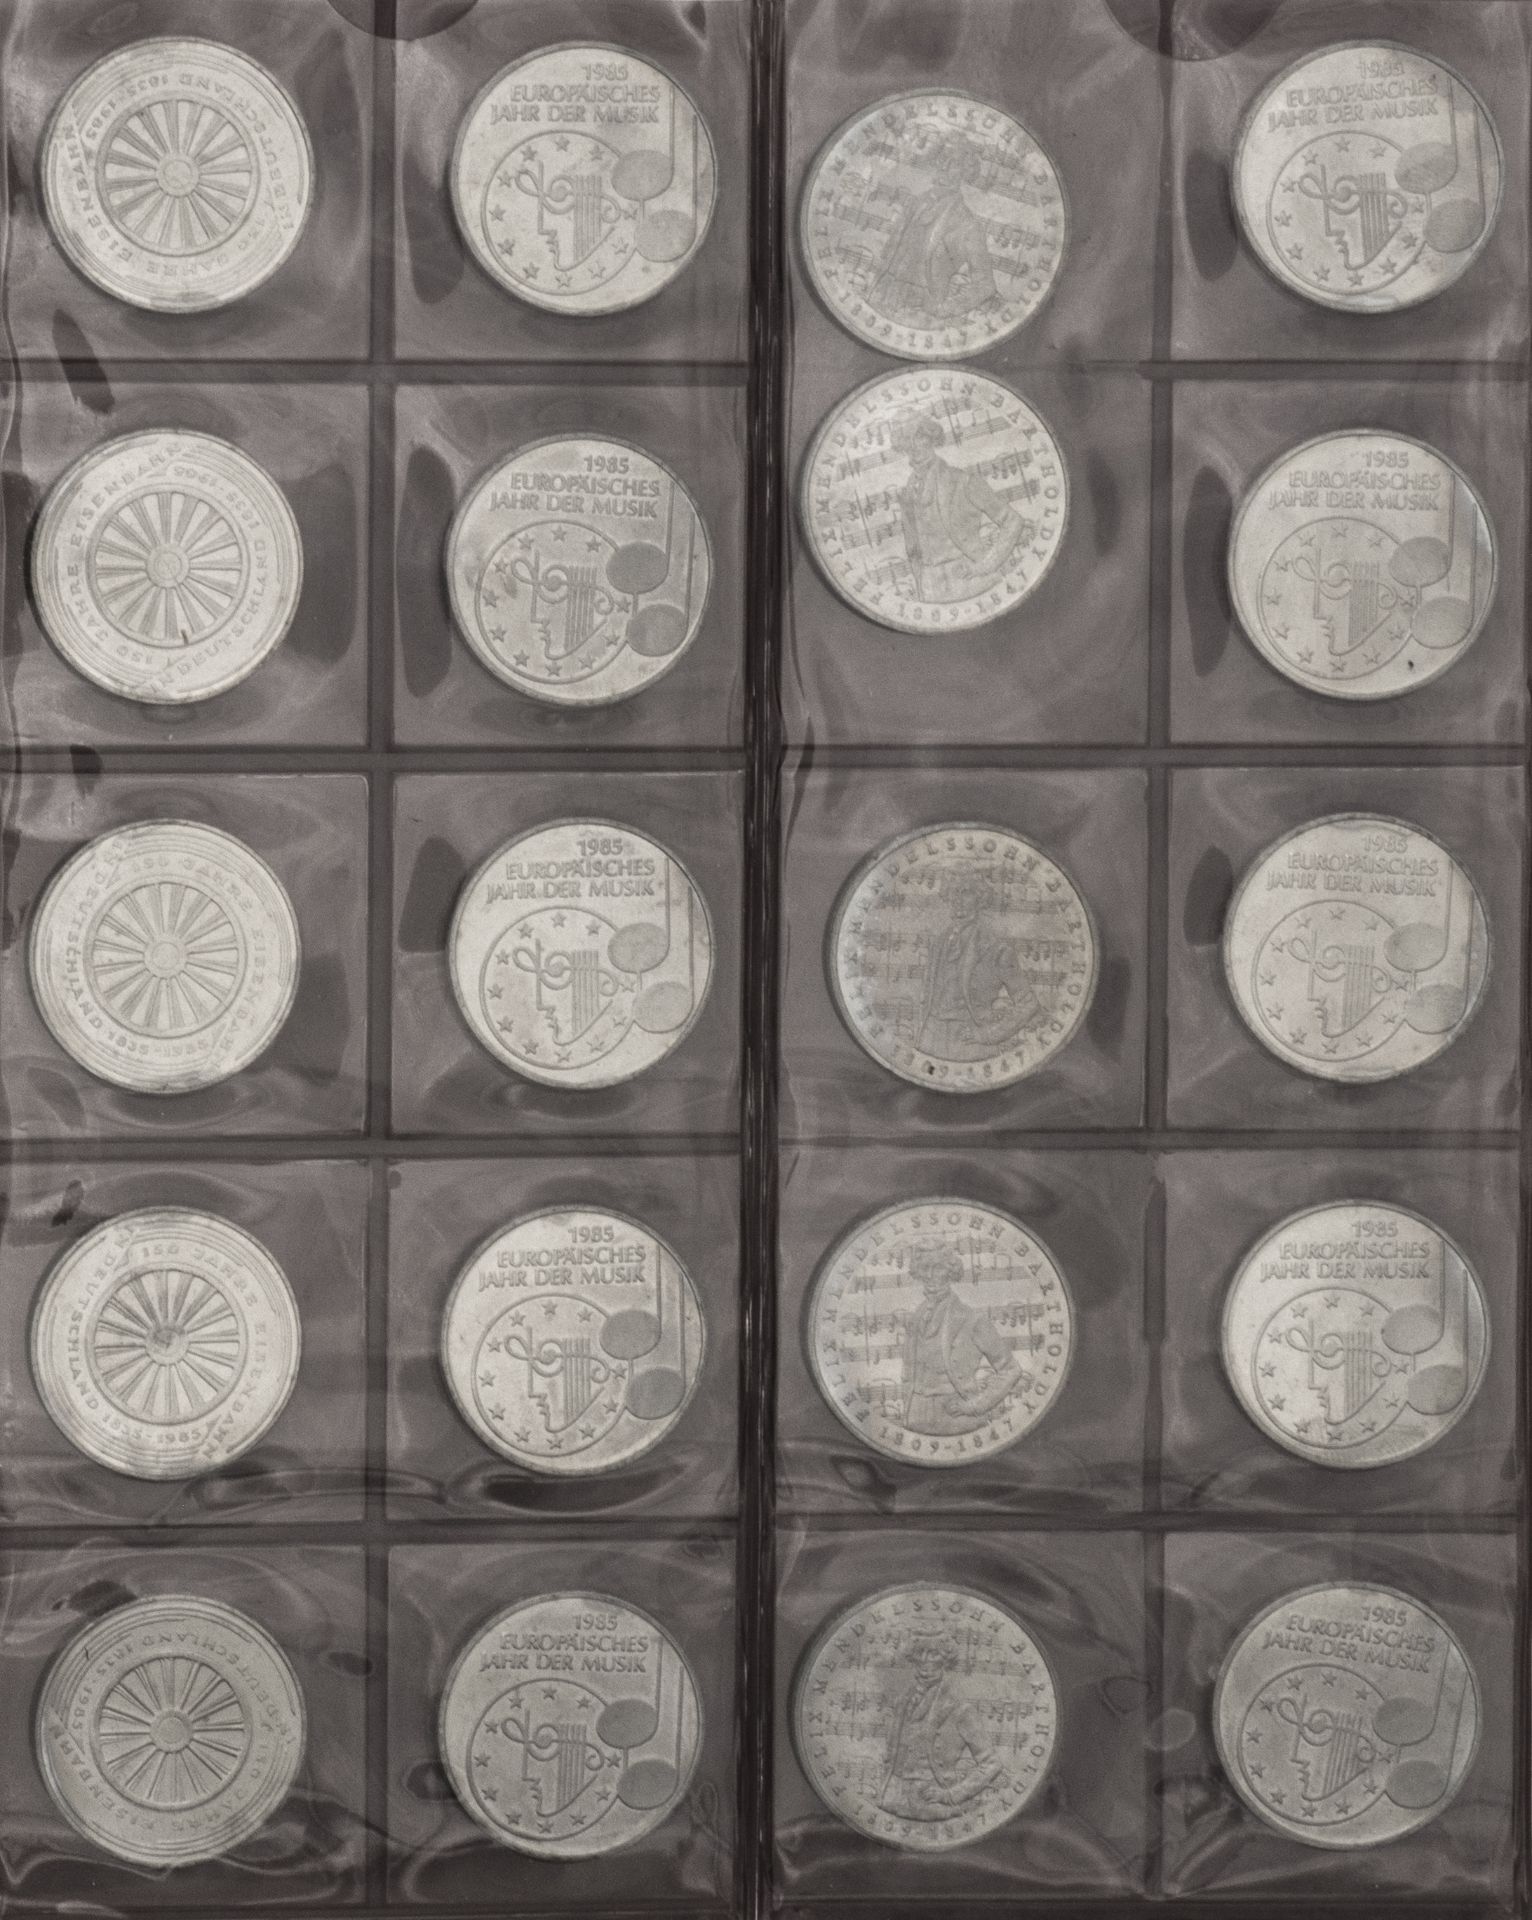 BRD, Sammlung aus 130 Stück 5.- DM - Münzen. Im Sammelalbum. - Image 3 of 7